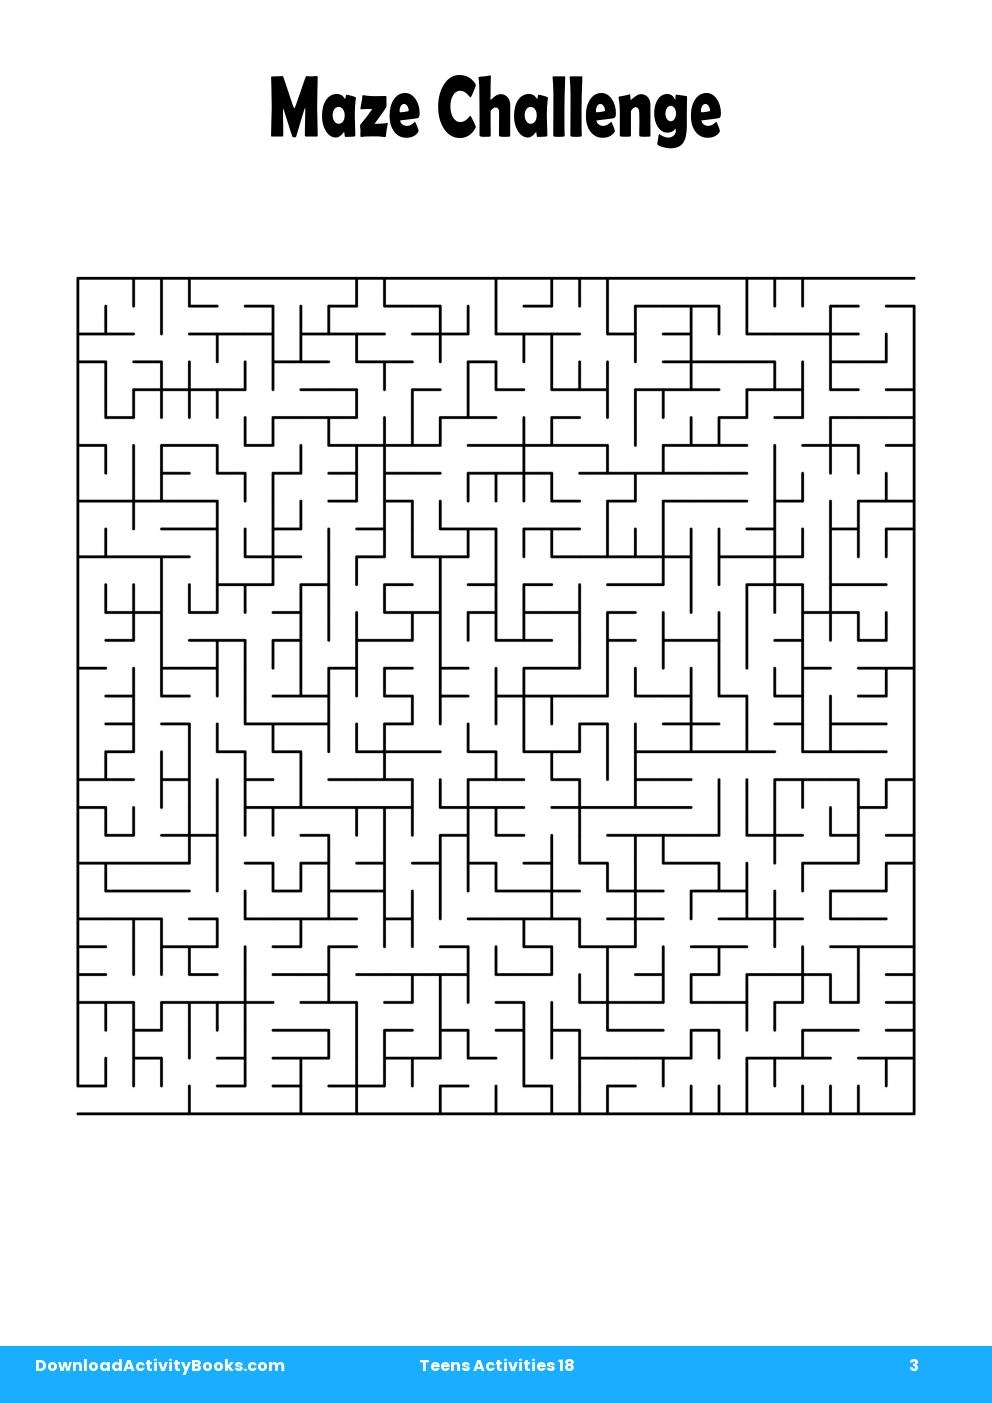 Maze Challenge in Teens Activities 18